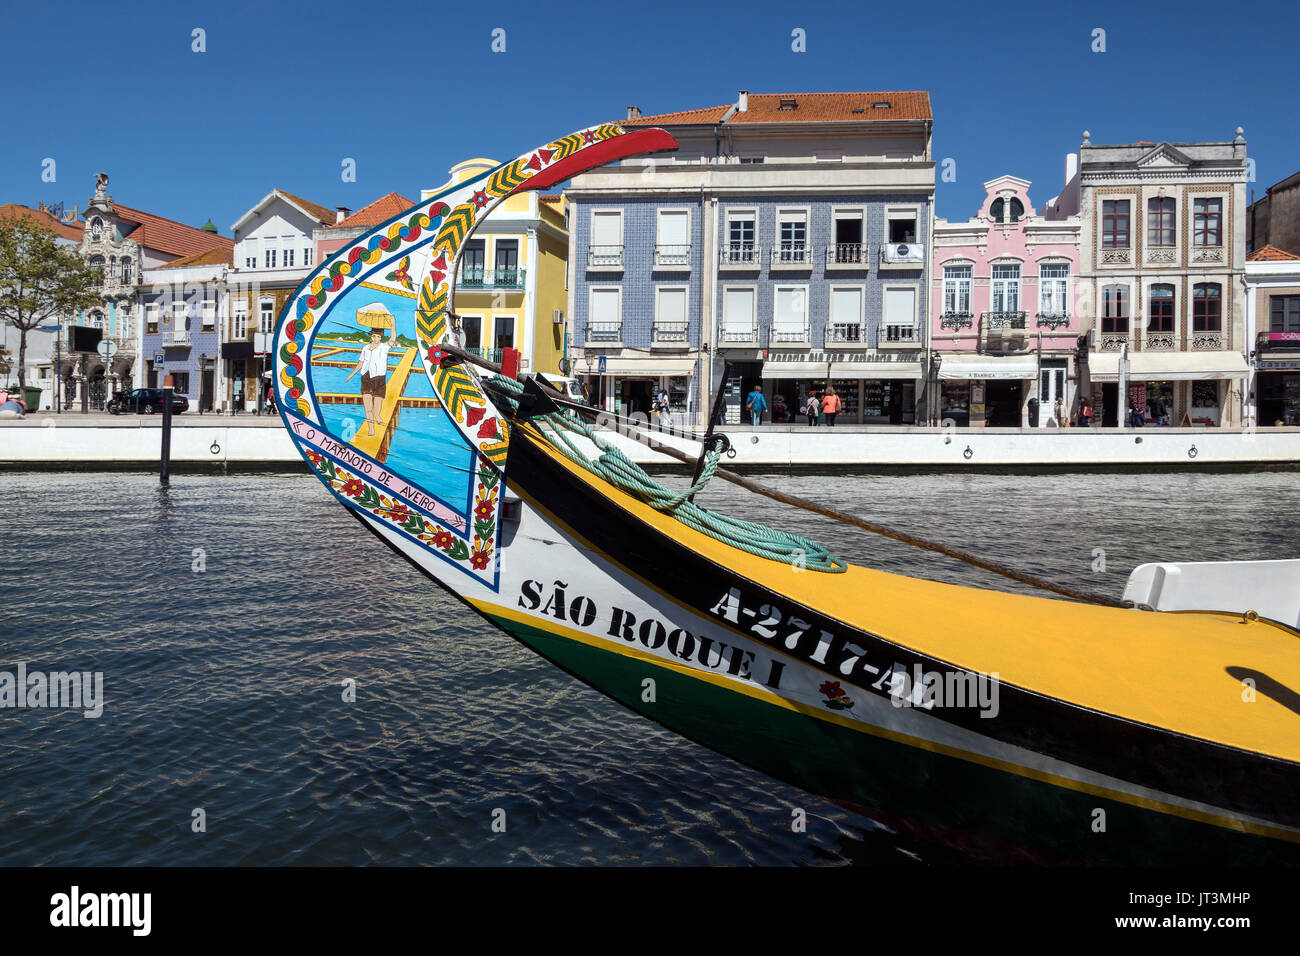 Aveiro, conosciuta come la Venezia del Portogallo, è una destinazione turistica popolare nella regione di centro del Portogallo. Foto Stock